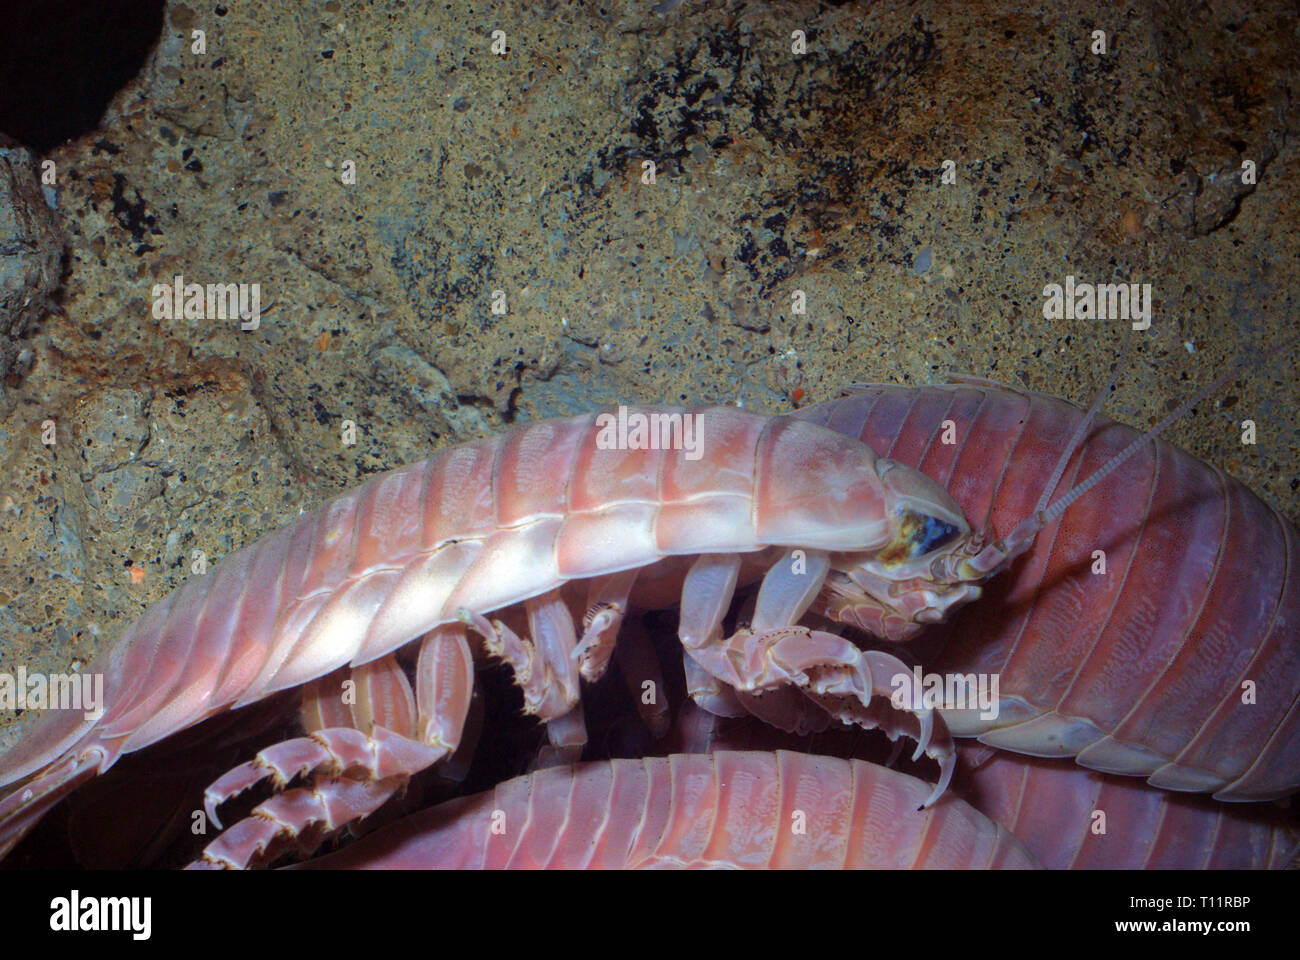 Giant isopod (Bathynomus giganteus) Stock Photo